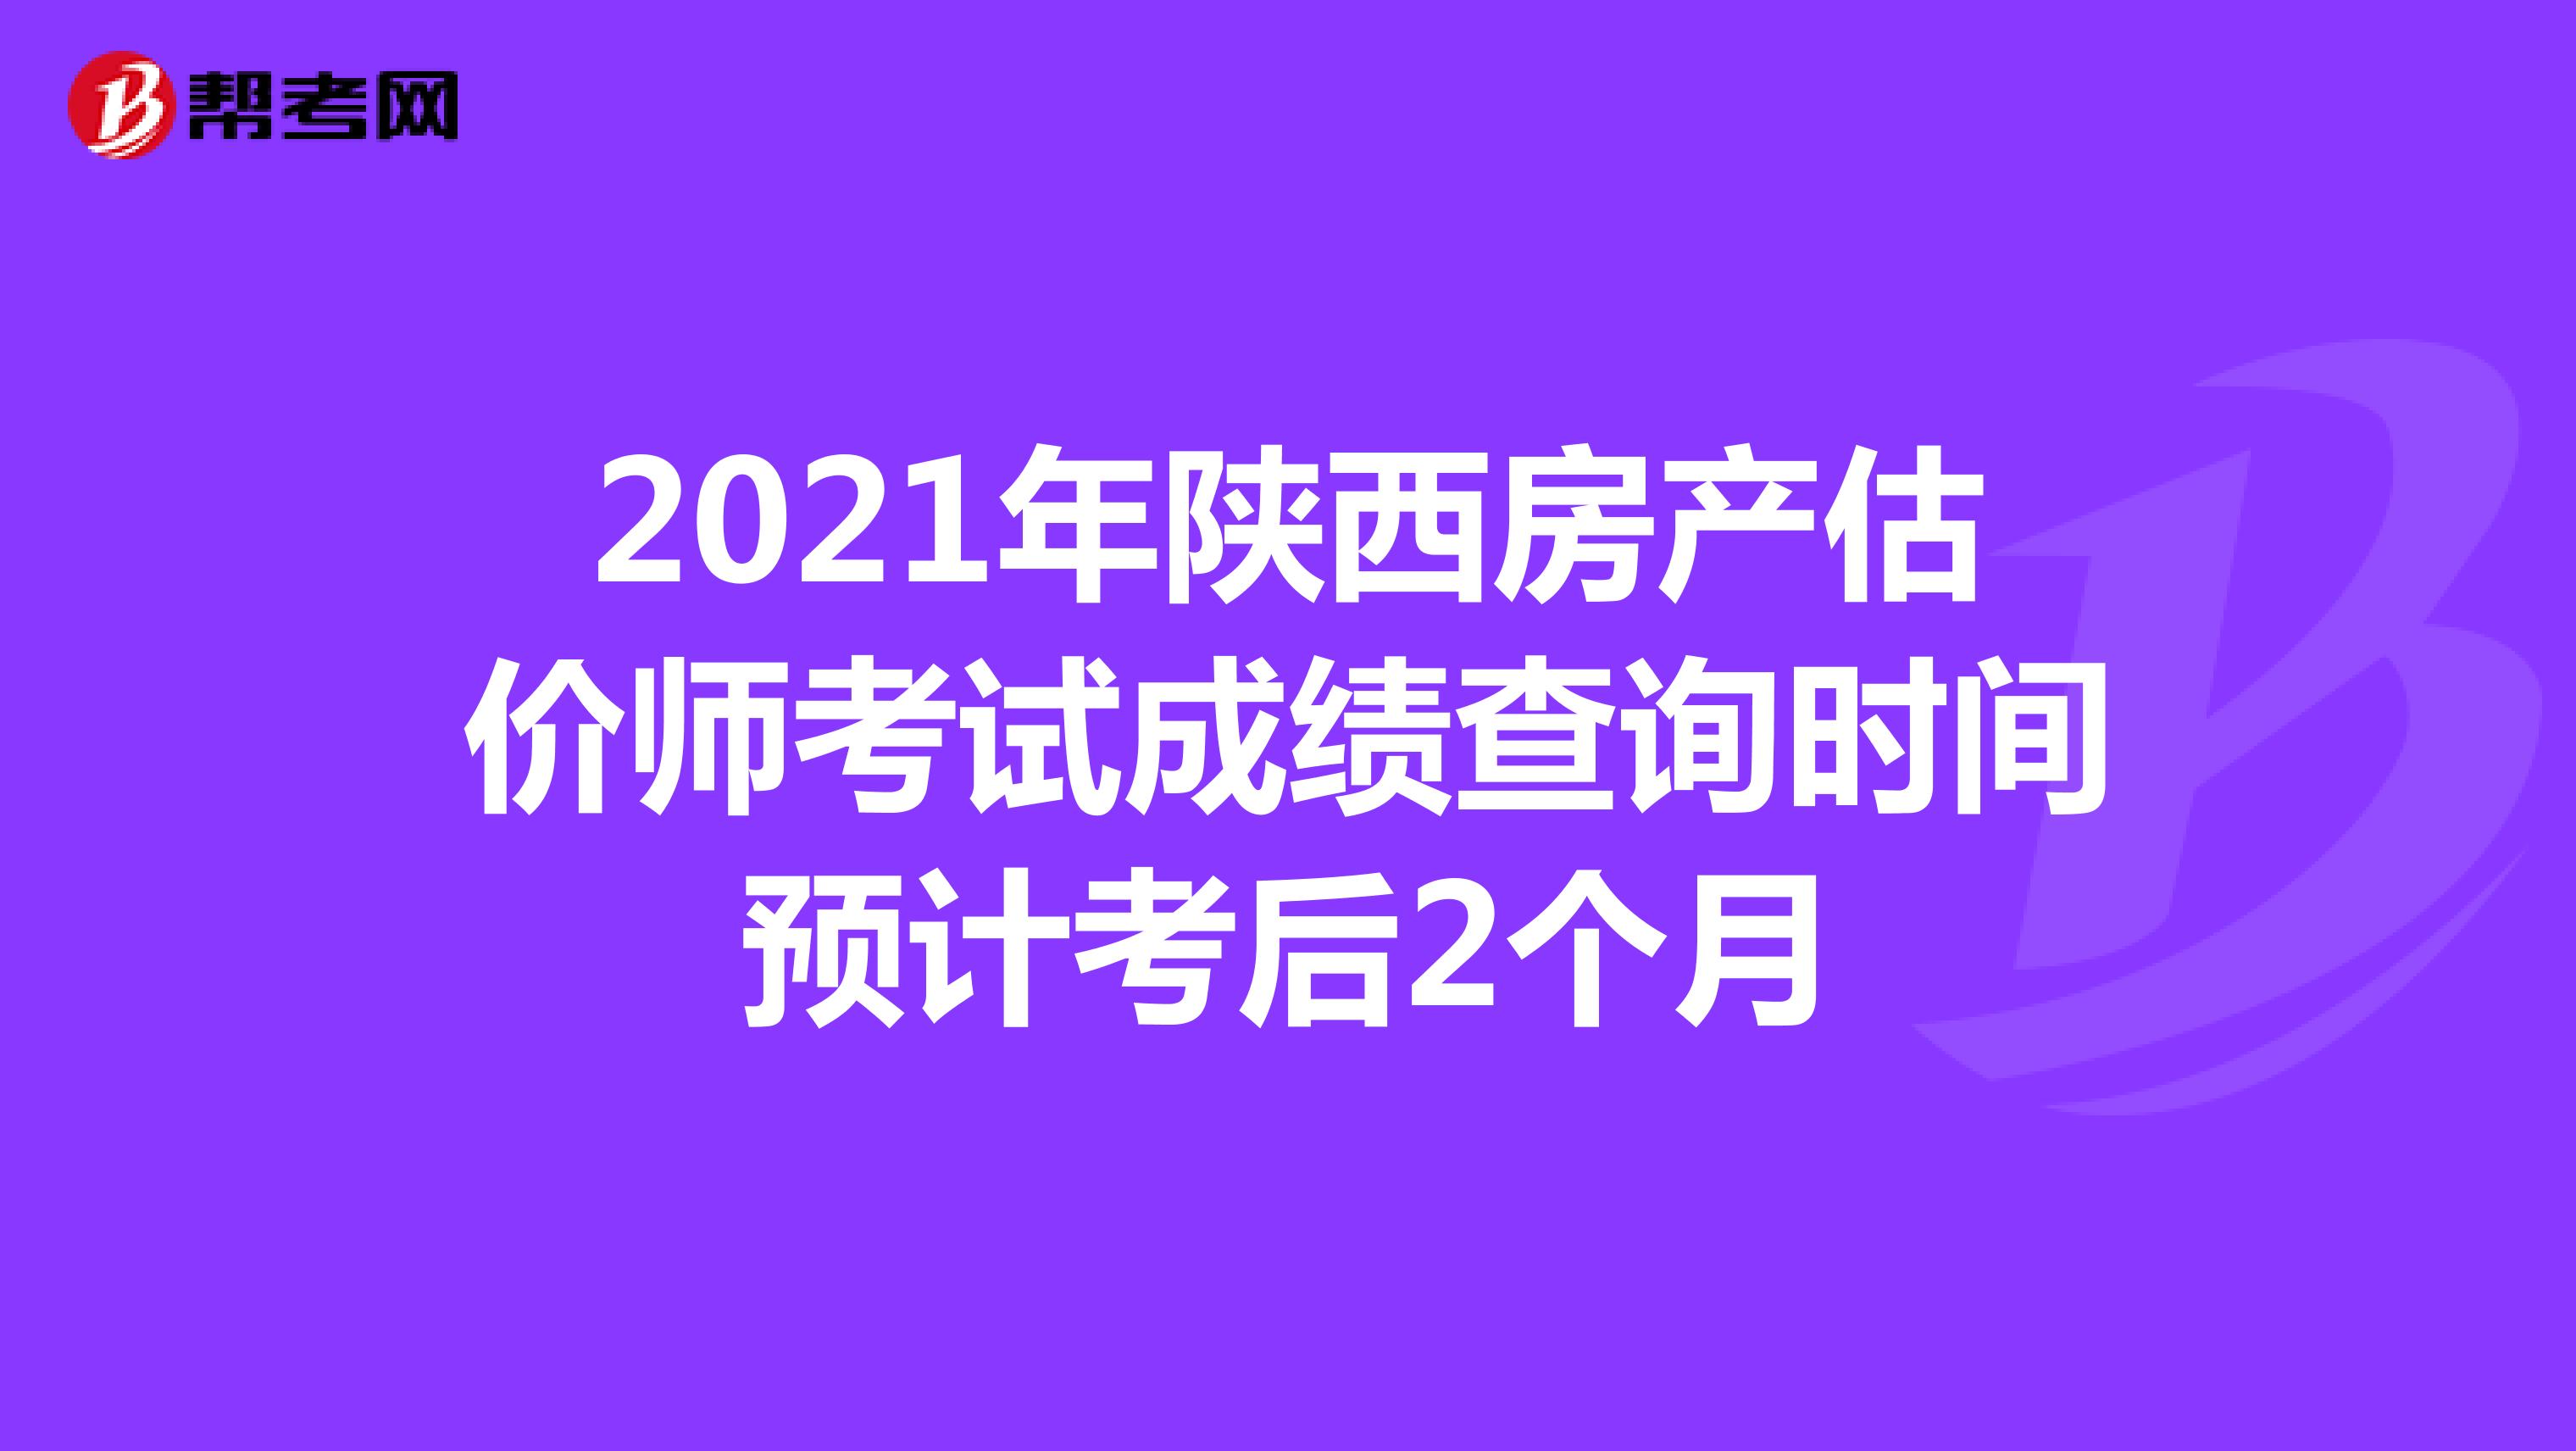 2021年陕西房产估价师考试成绩查询时间预计考后2个月